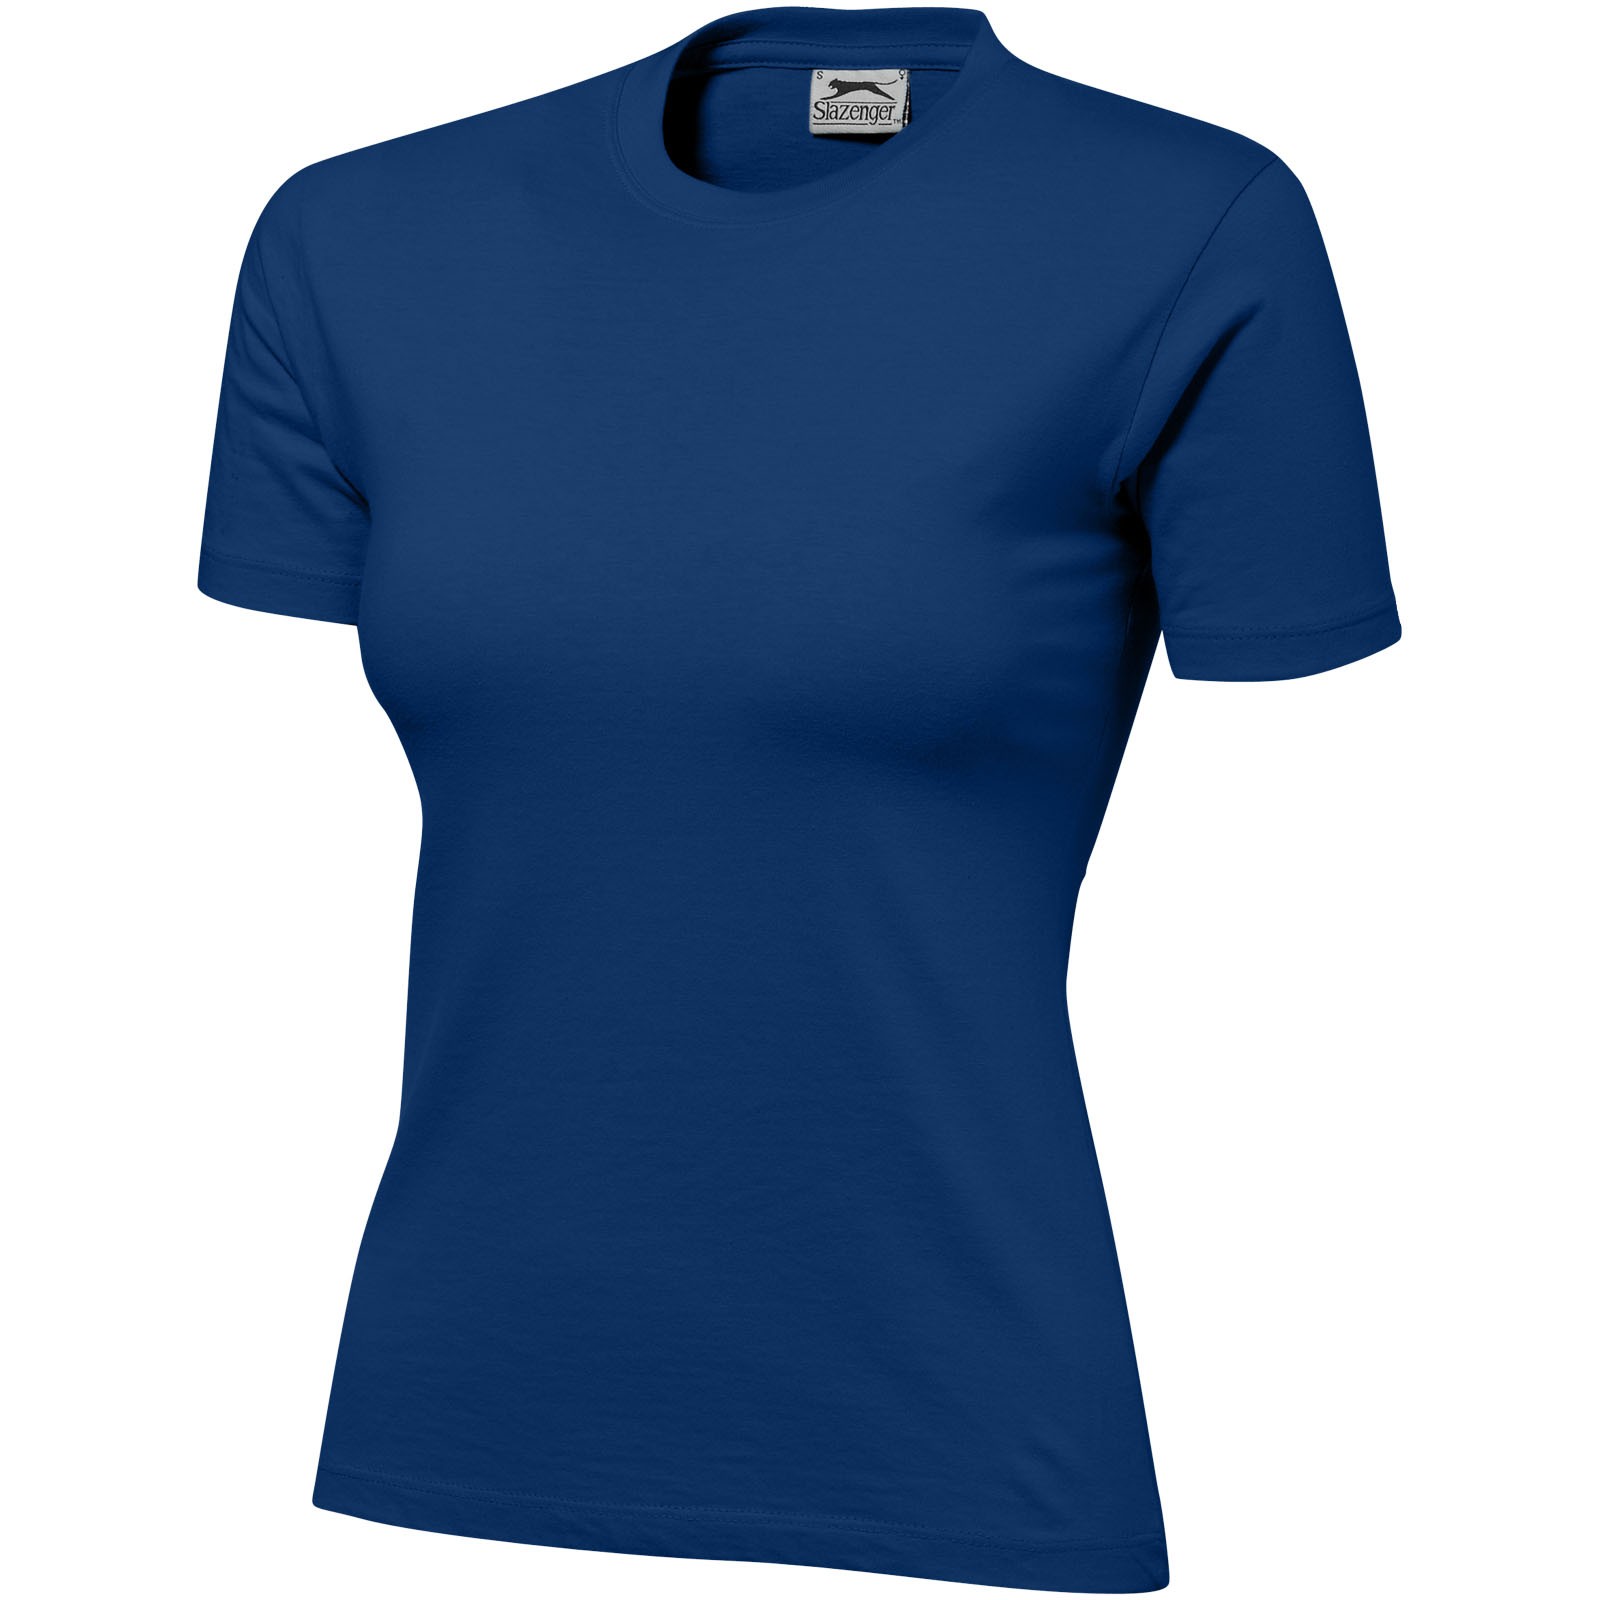 Damski T-shirt Ace z krótkim rękawem - Błękit królewski / L